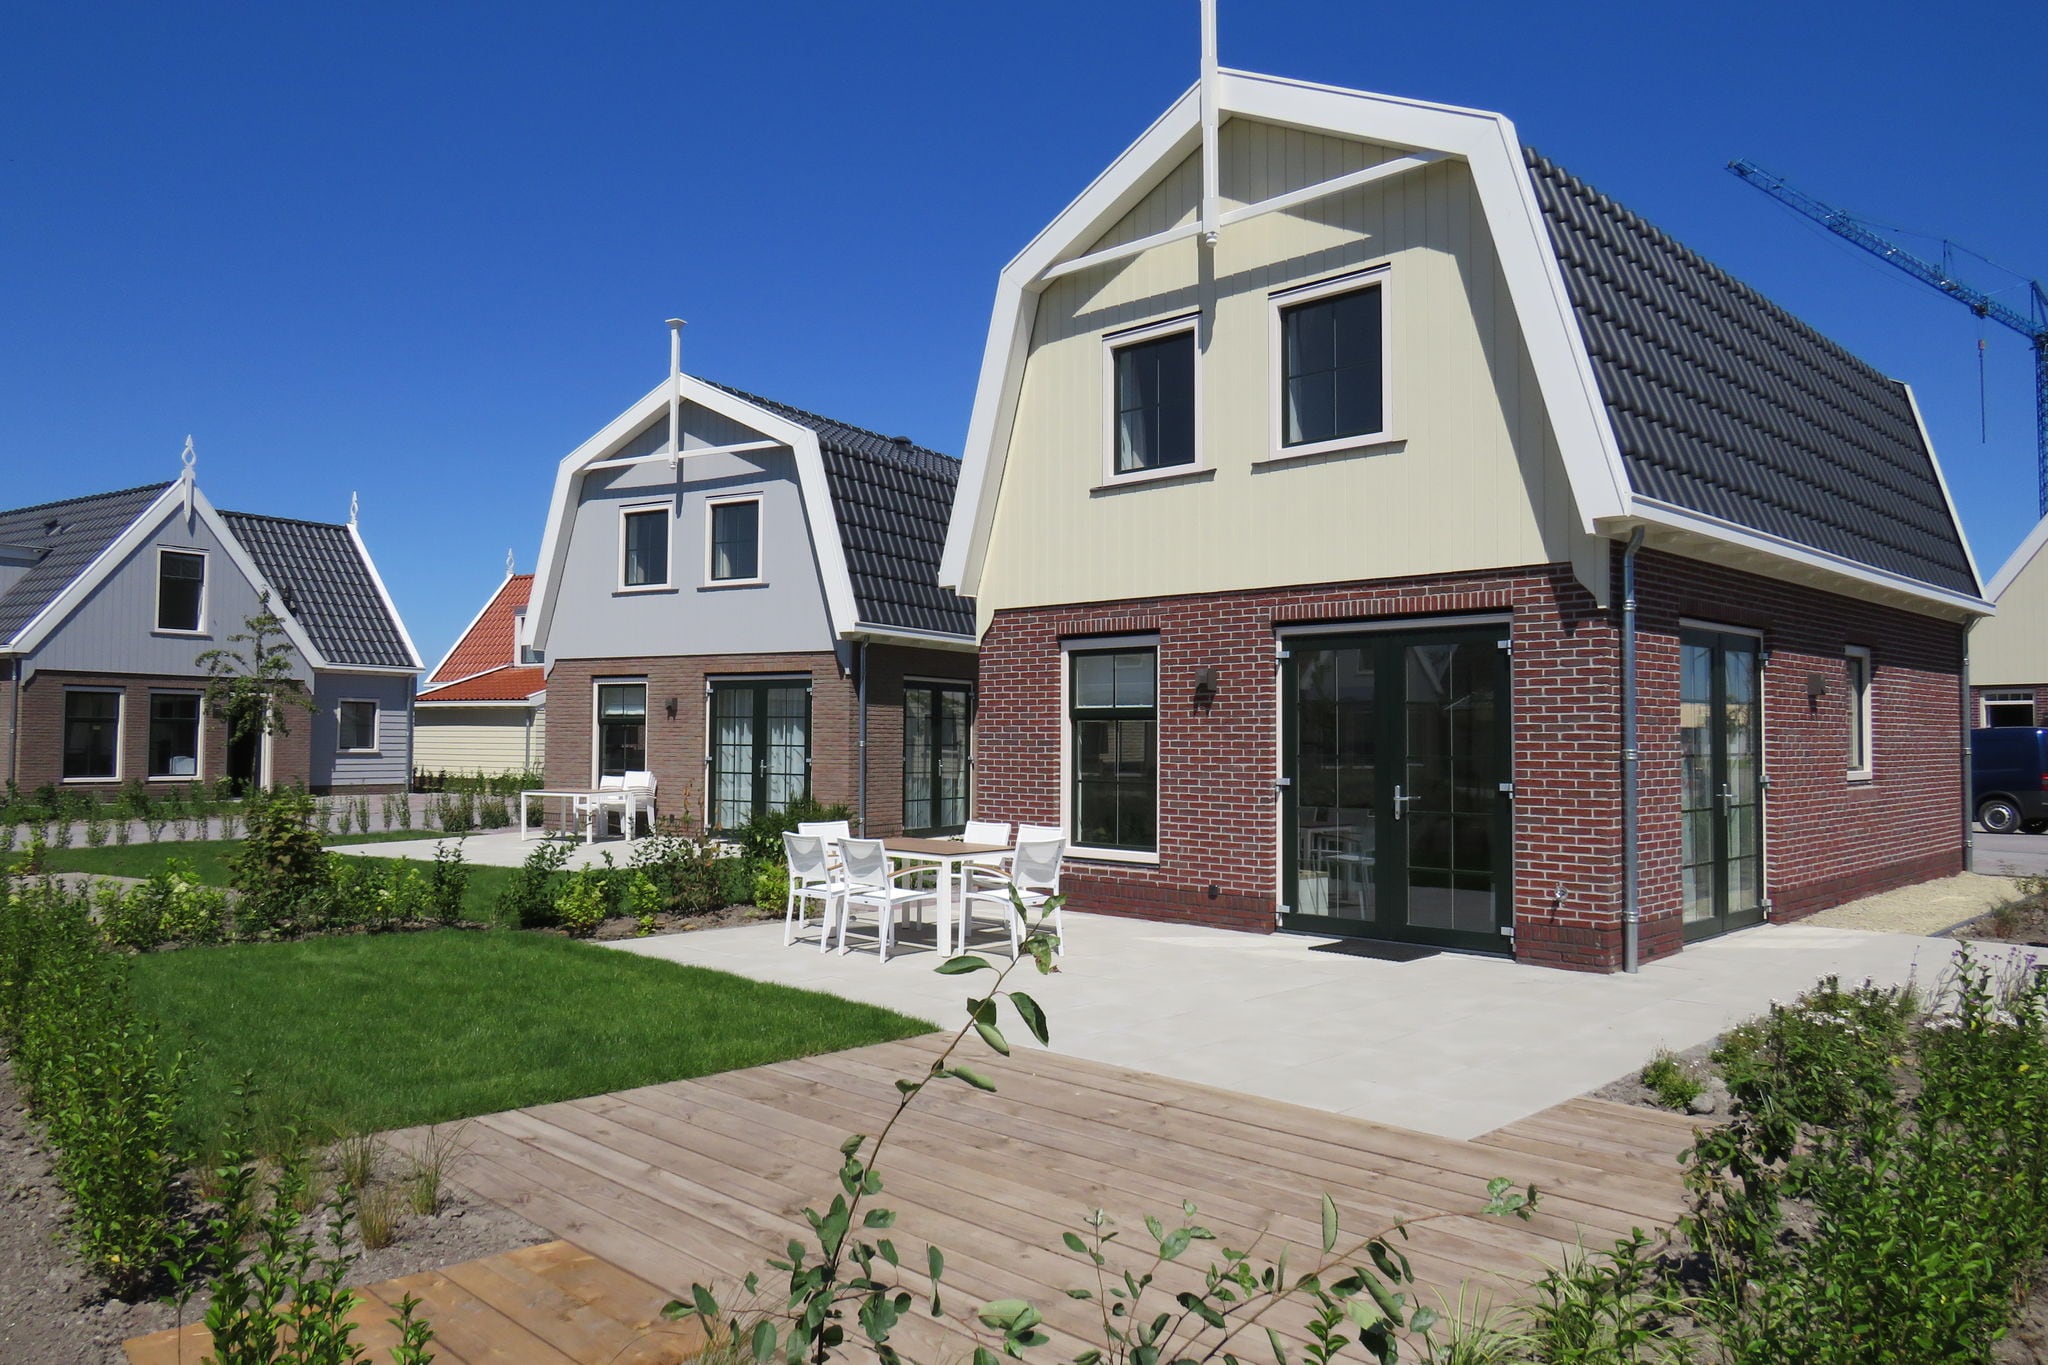 Maison de vacances sur le Markermeer, près d'Amsterdam